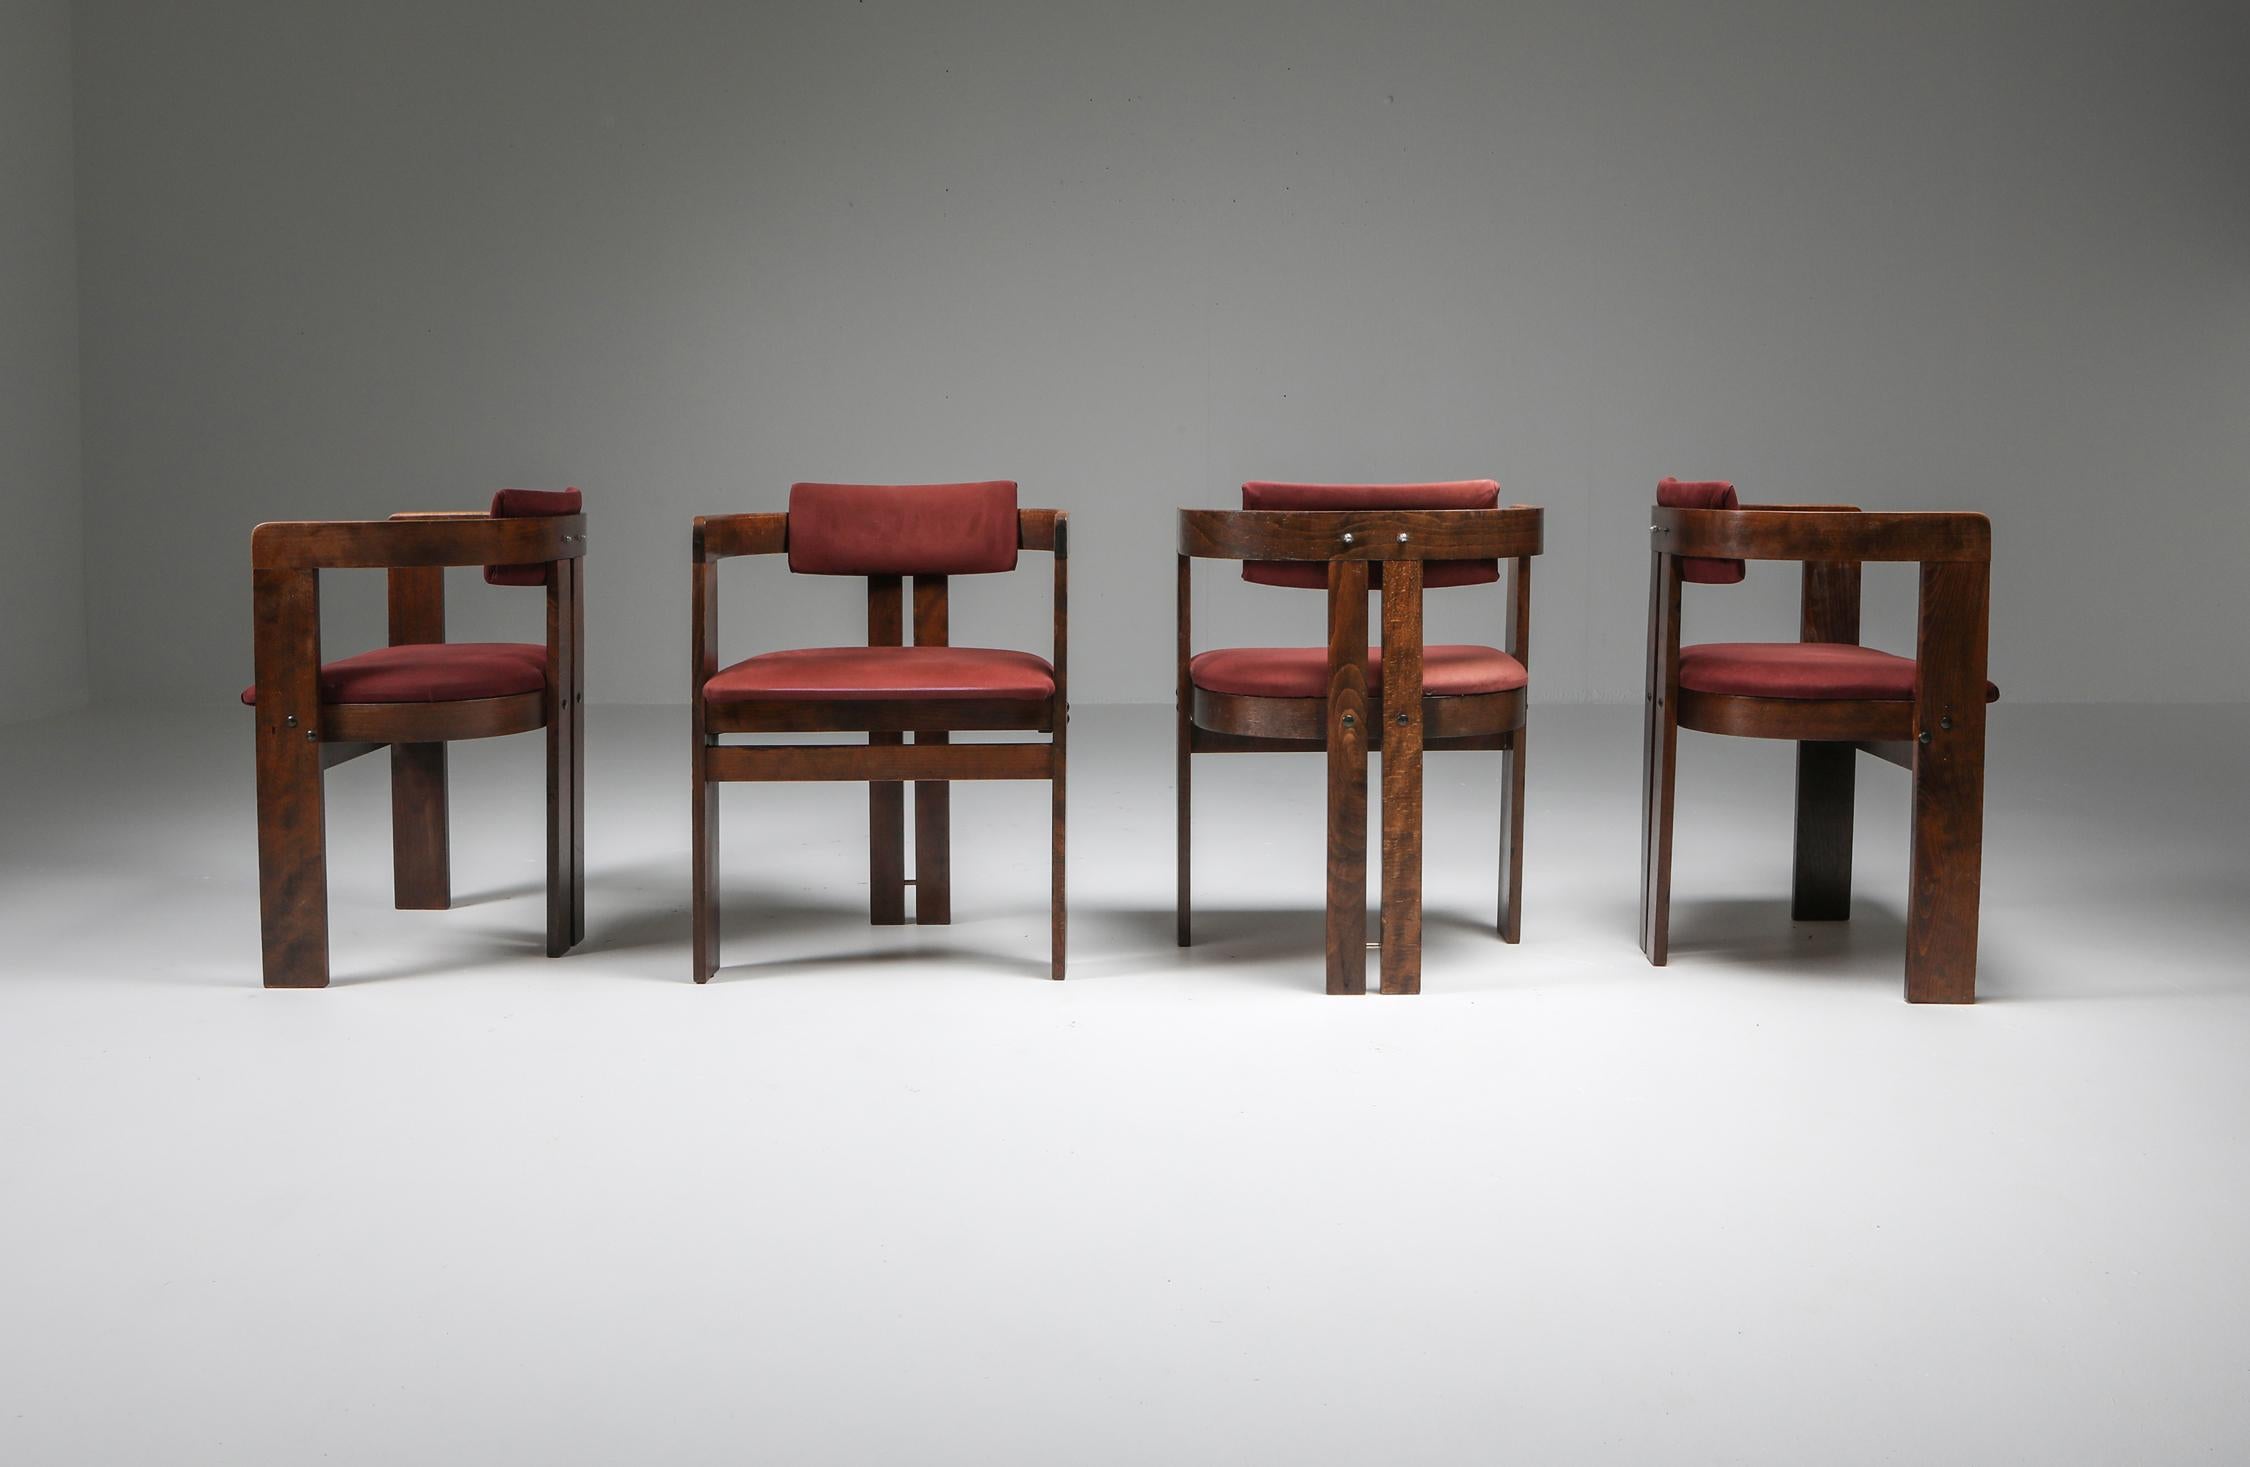 Afra et Tobia Scarpa:: Pigreco:: chaises à manger en bois courbé:: Italie:: années 1960. 

Cet ensemble de quatre chaises de salle à manger italiennes ressemble beaucoup à la chaise 